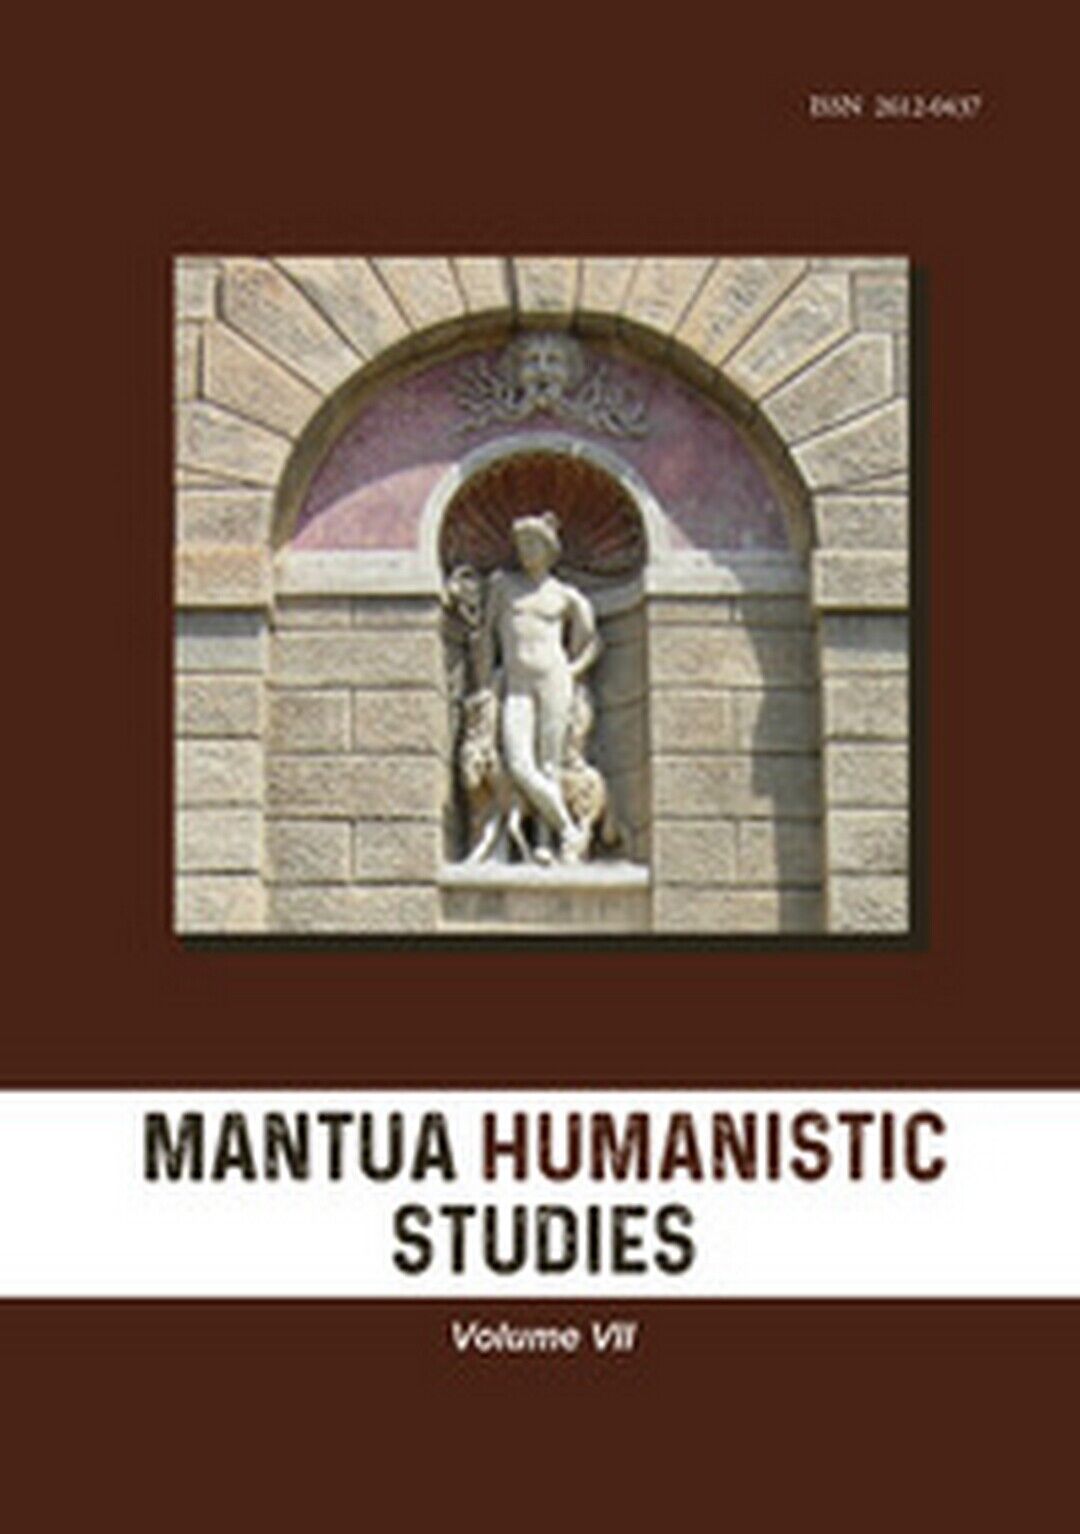 Mantua humanistic studies Vol.7  di Aa. Vv.,  2019,  Youcanprint